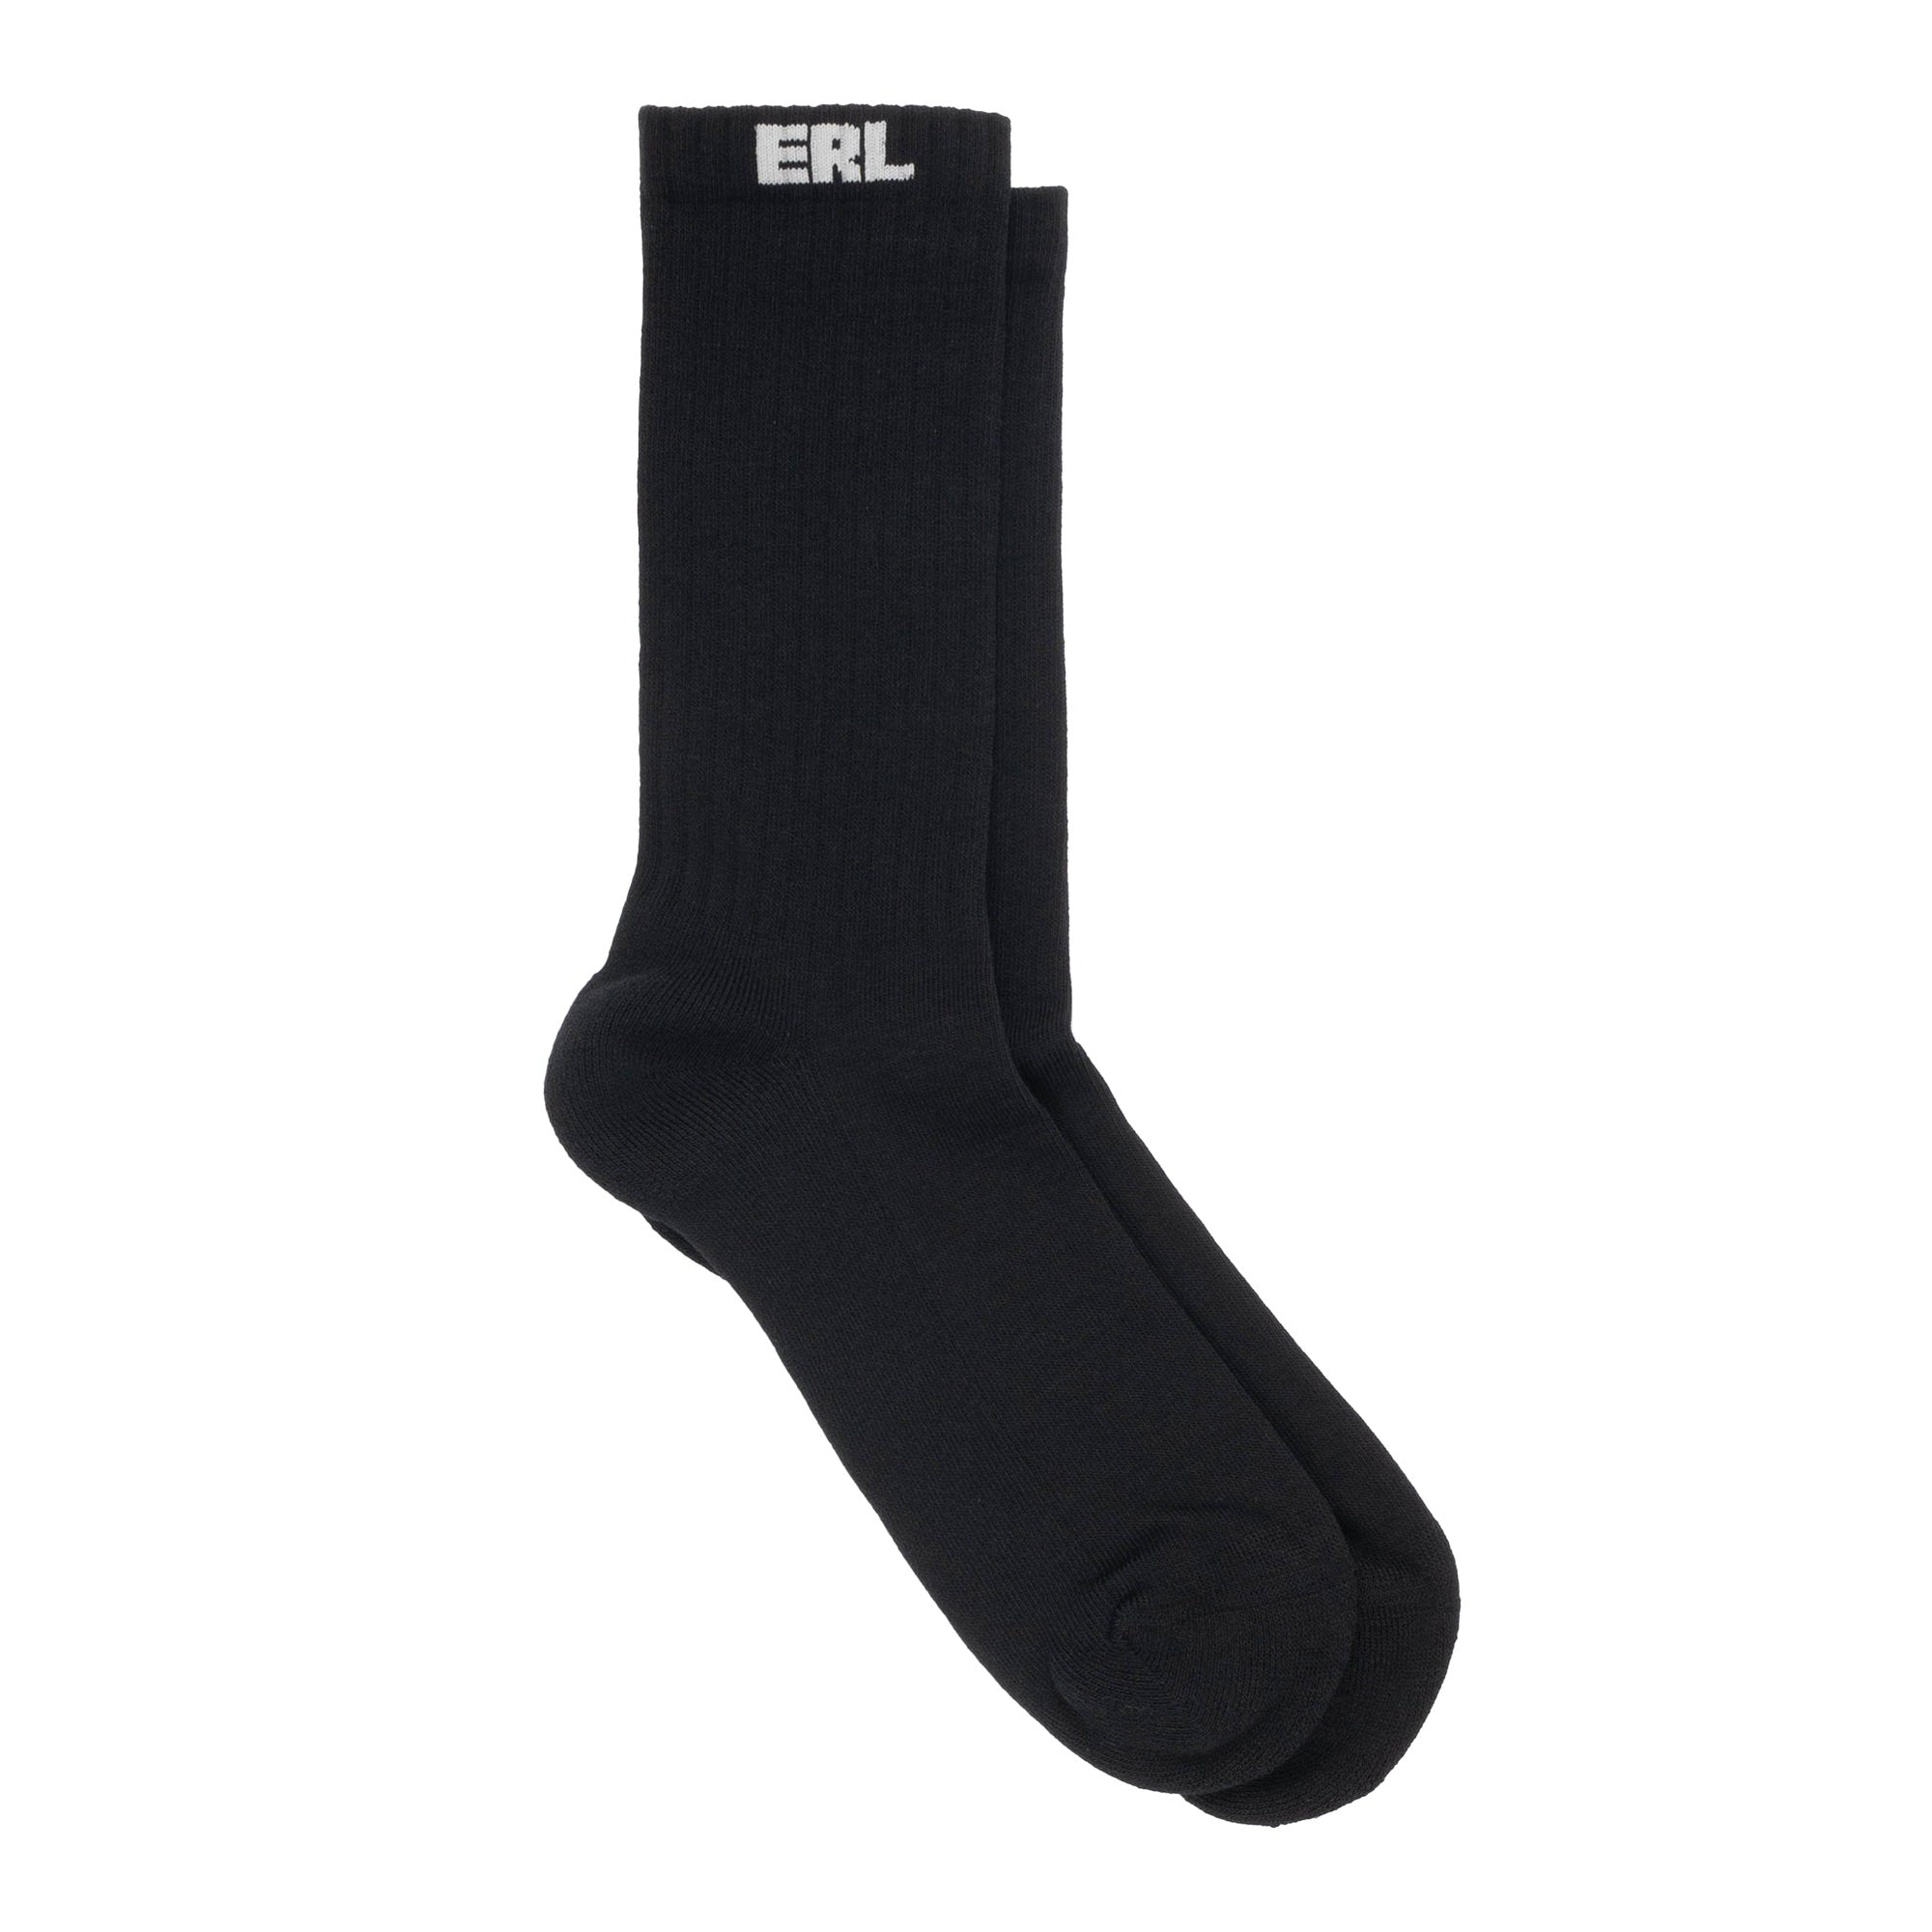 ERL Unisex Socks Black ERL07K011